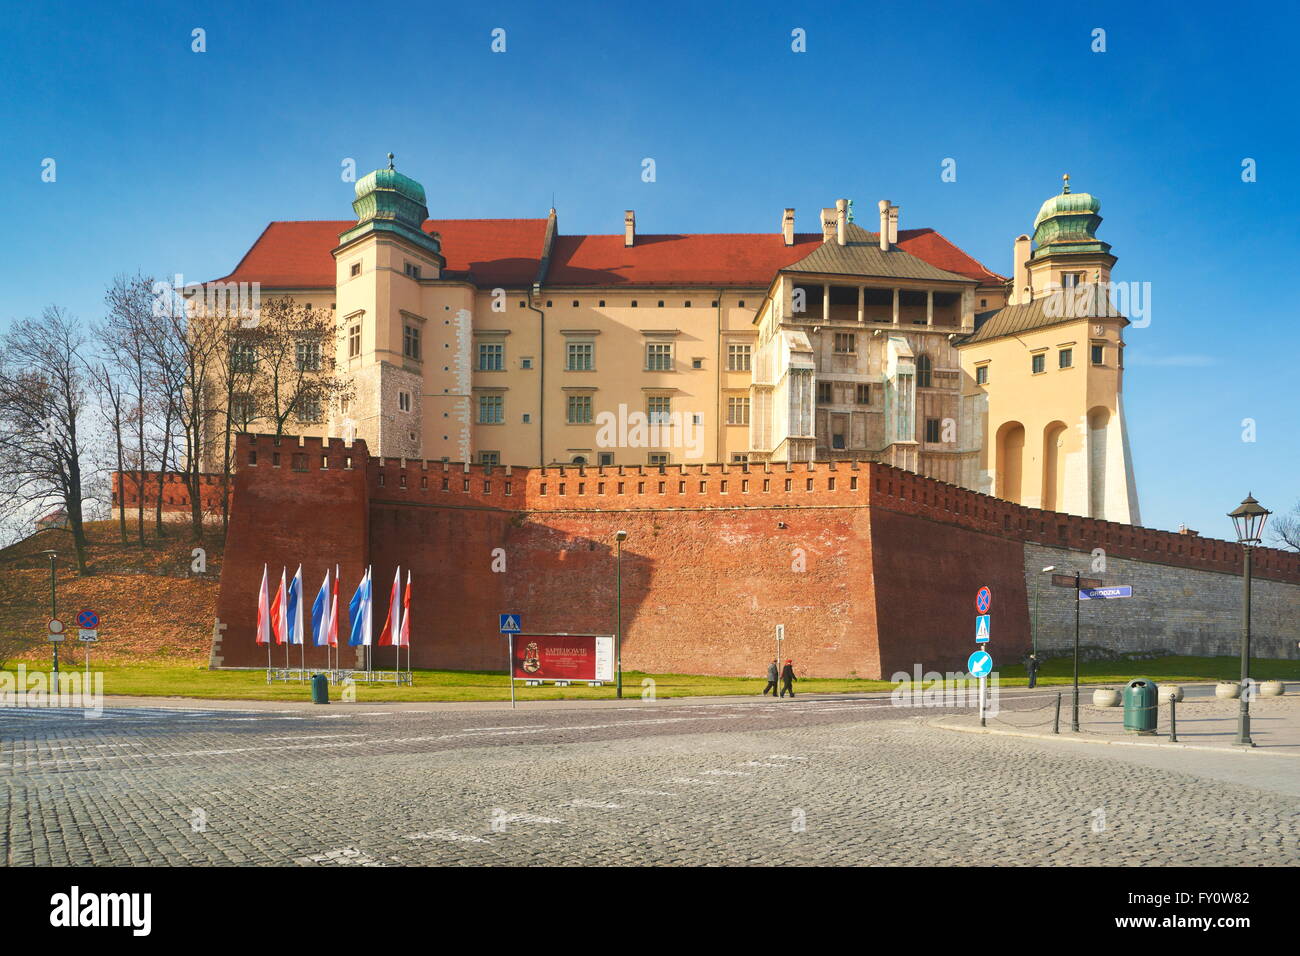 Die gotische Burg Wawel, Krakow (Krakau), Polen, Europa Stockfoto